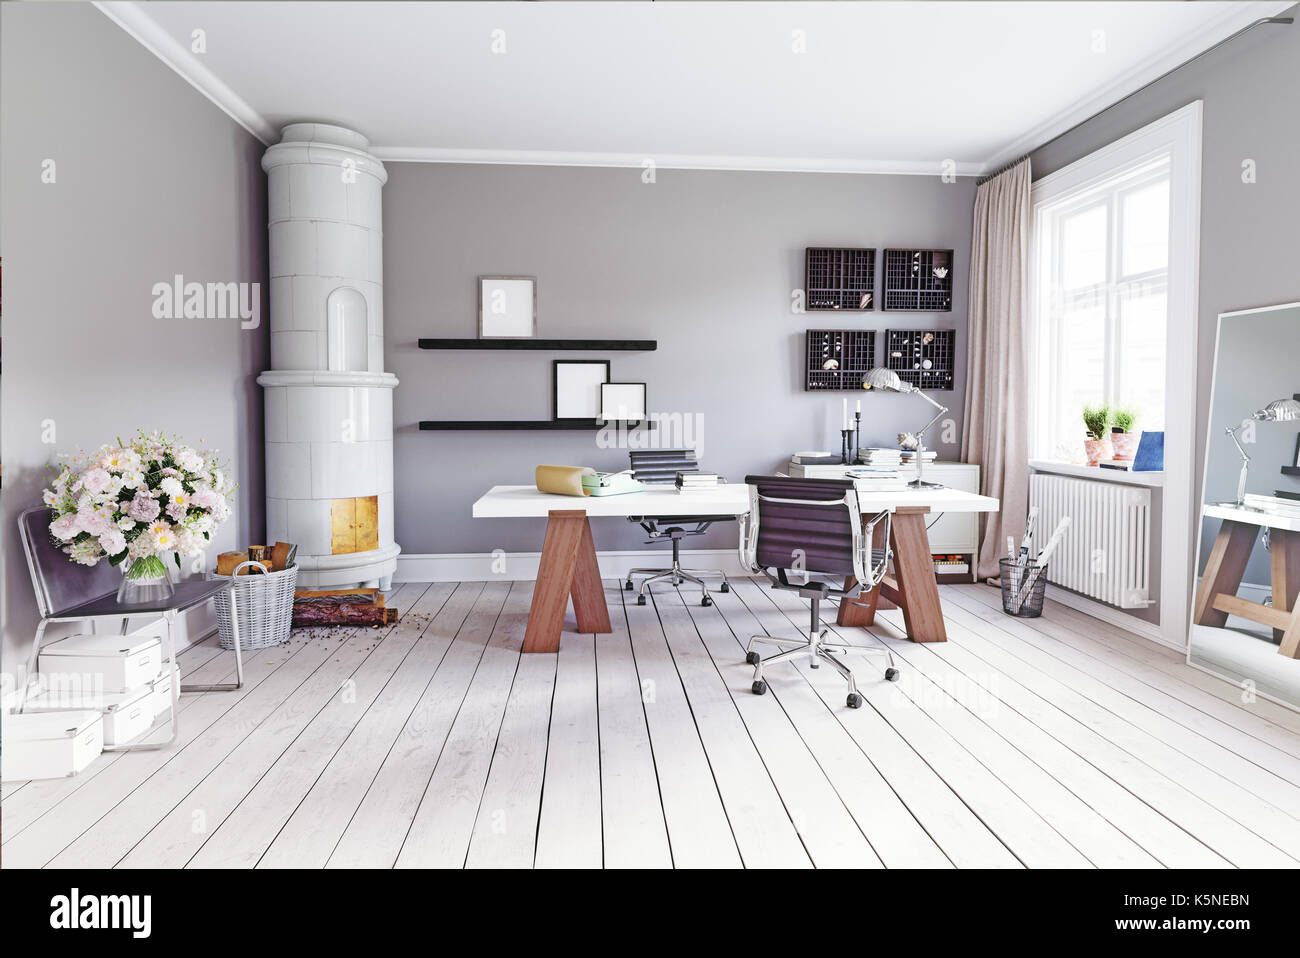 Salle d'étude moderne classique avec poele suédois, table et fauteuils. Concept 3D Rendering Banque D'Images